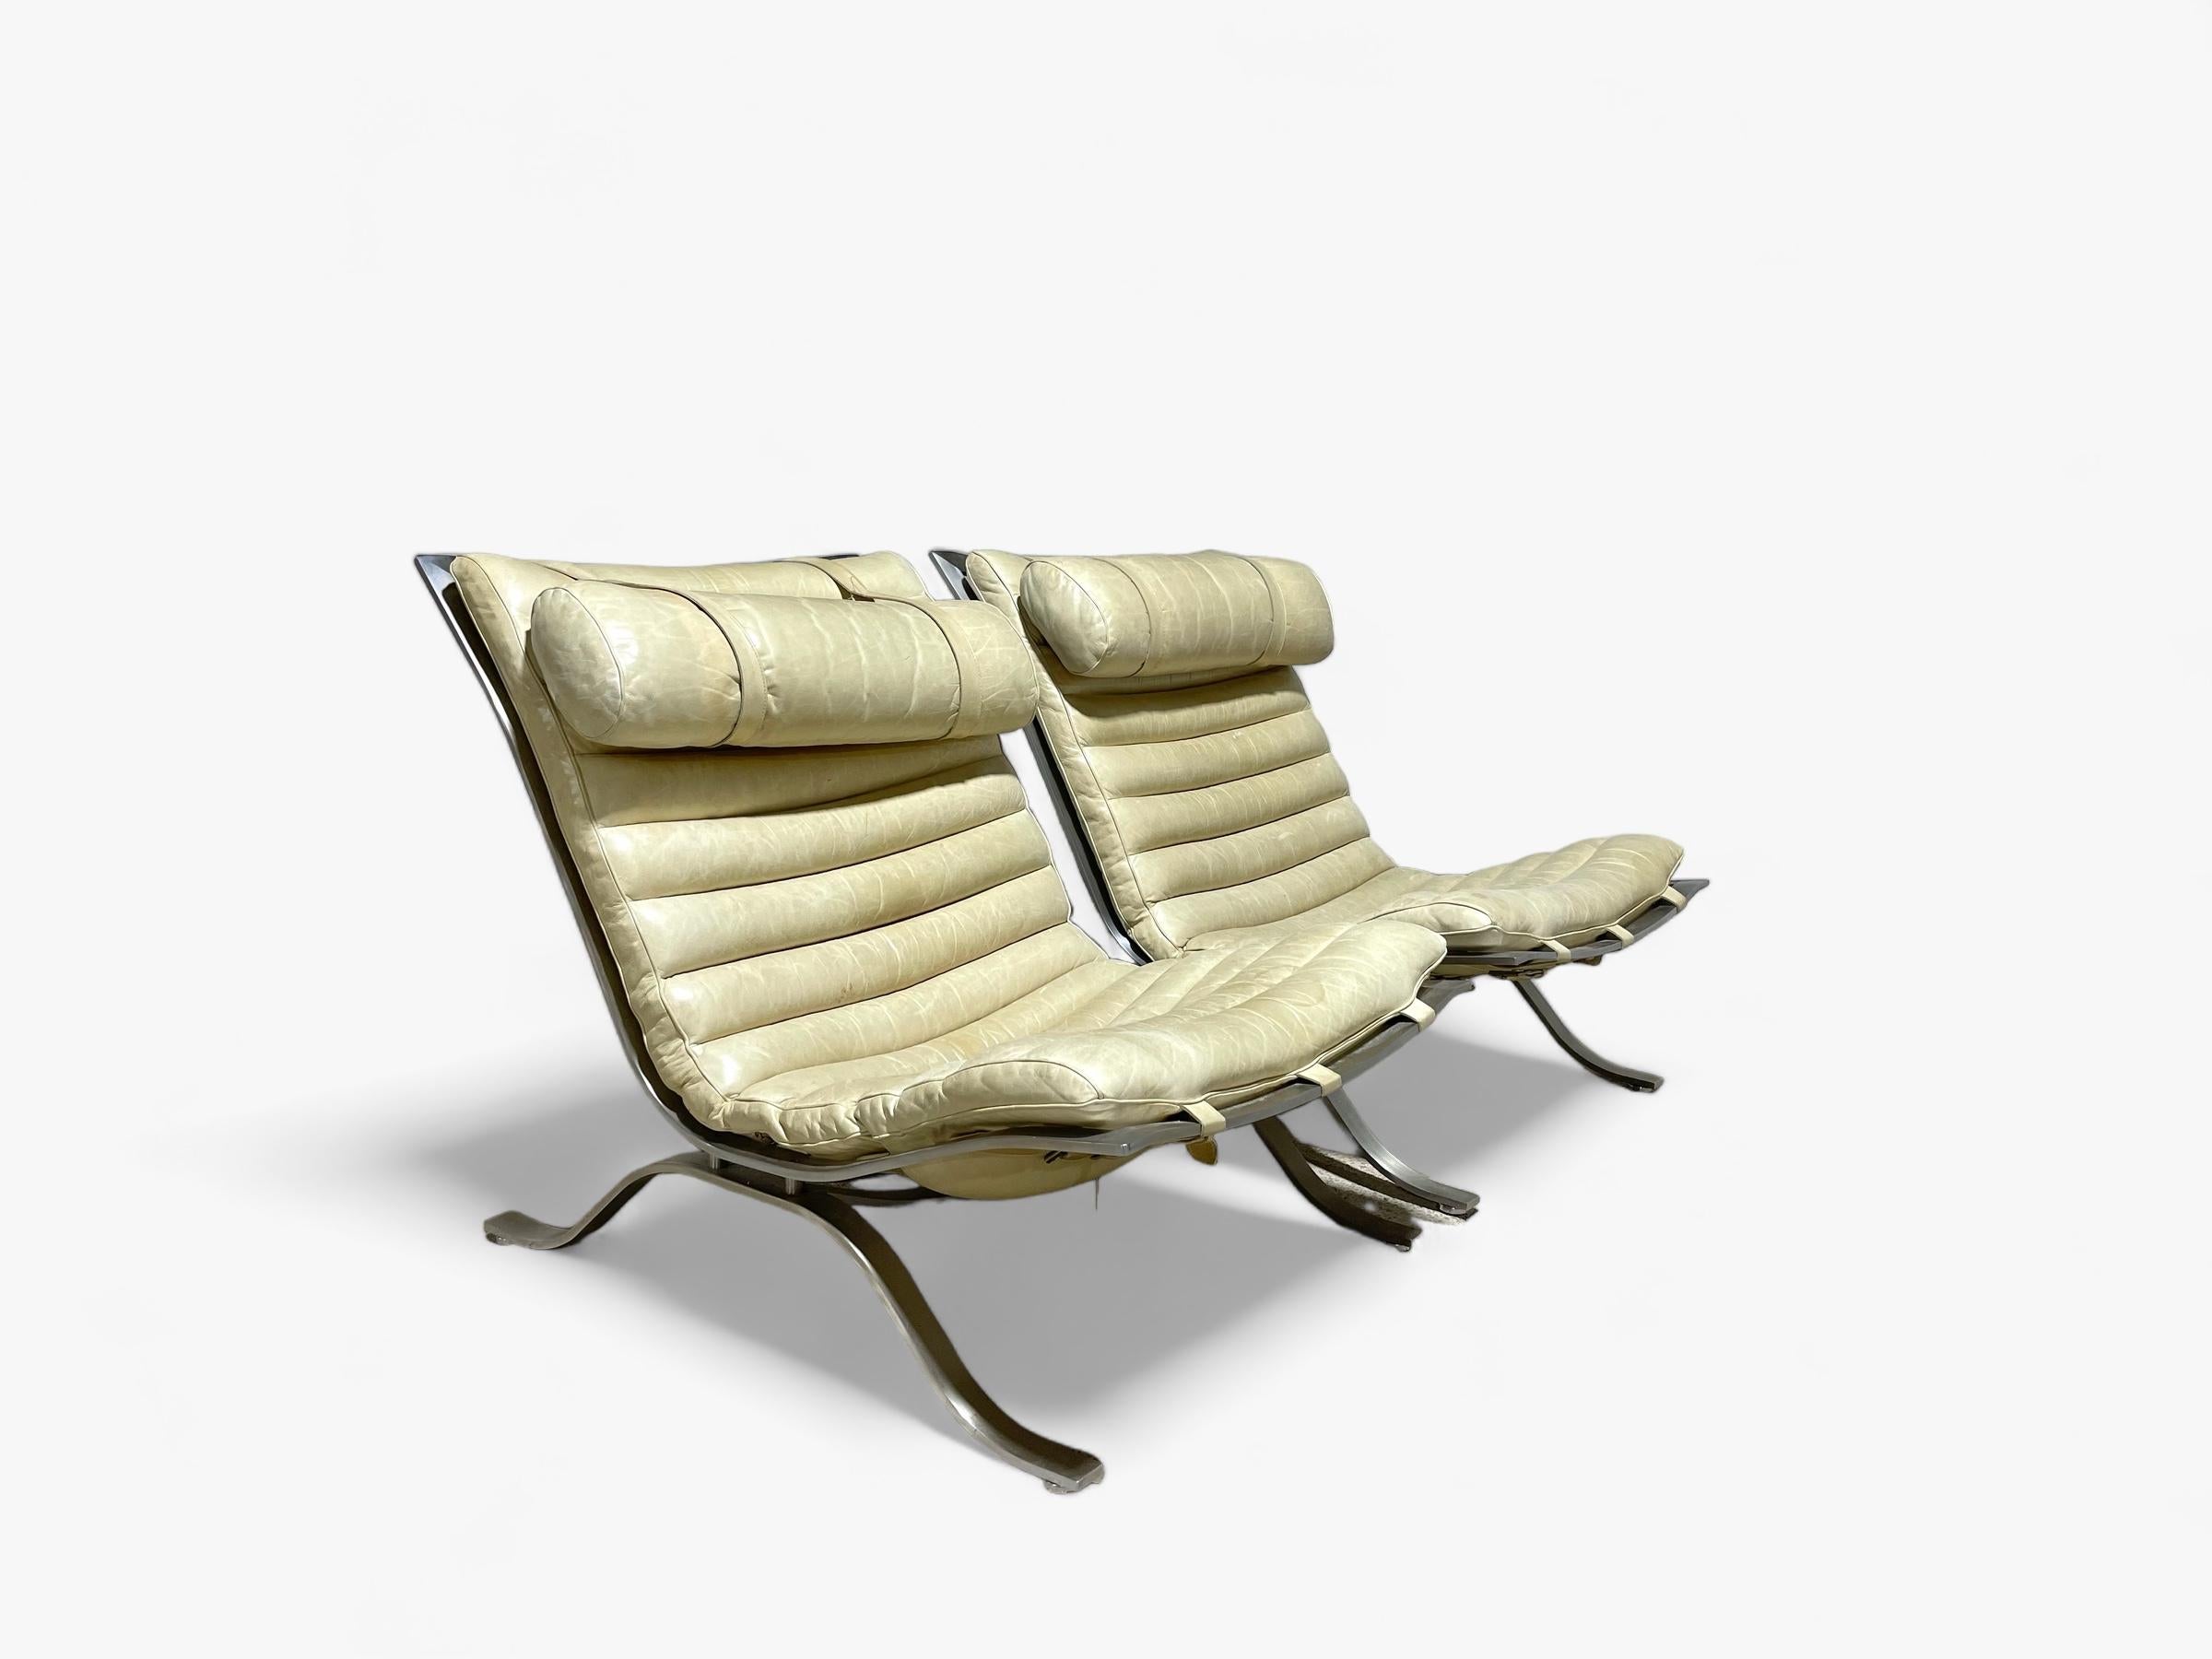 Paire de spectaculaires chaises longues Arne Norells en cuir ivoire patiné. Sans doute l'une des chaises de salon les plus recherchées et les plus collectionnées de la période The Modern Scandinavian. 

Les chaises ont été fabriquées par Norell